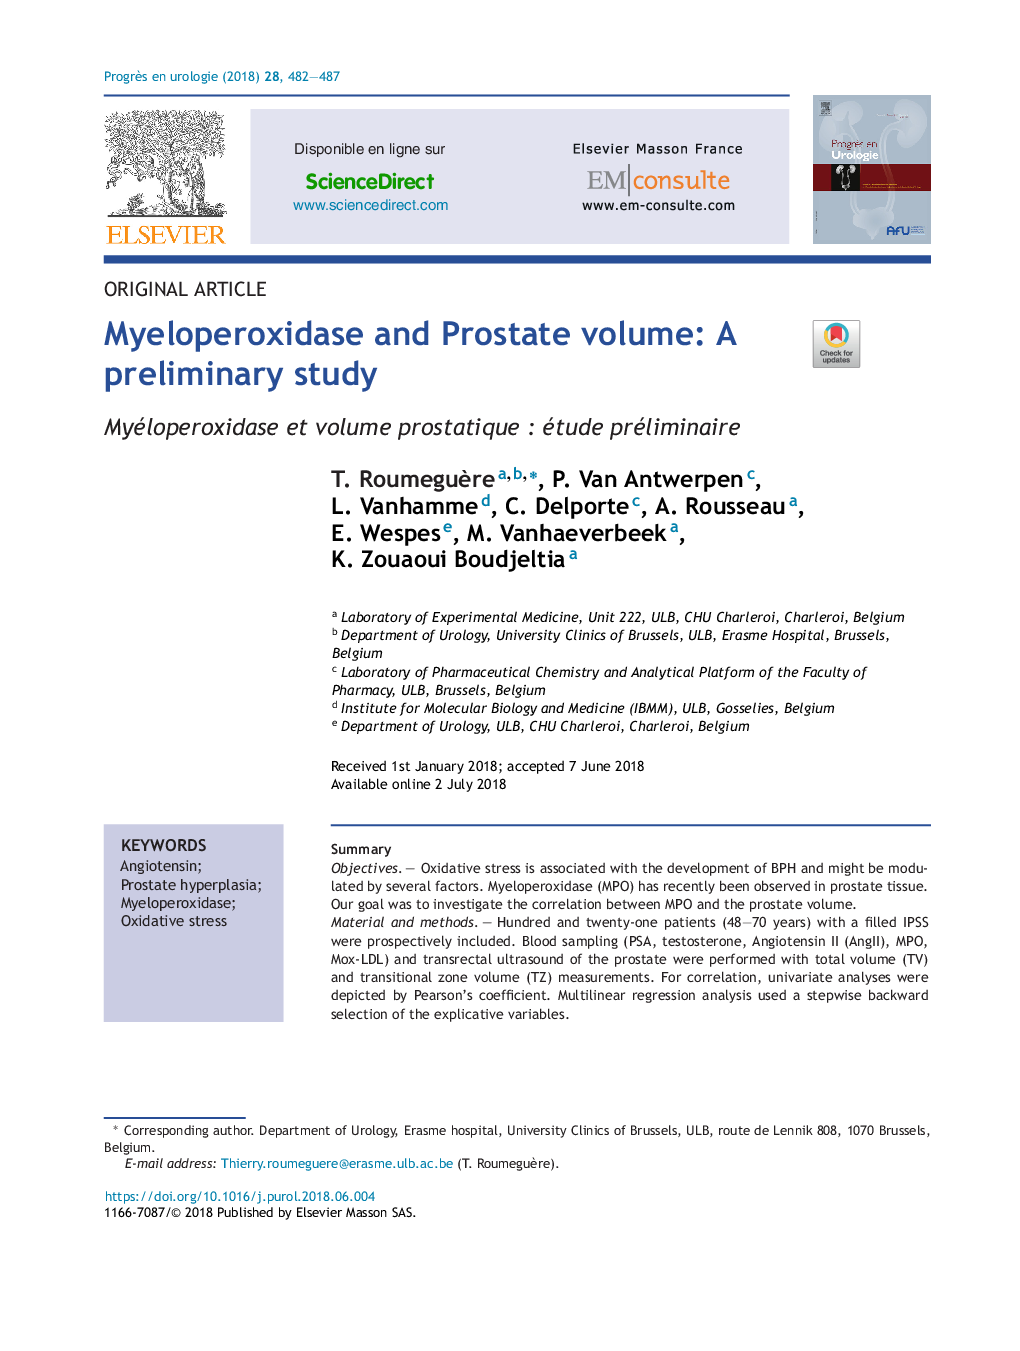 حجم پروتئین مینوپراکسیداز و پروستات: یک مطالعه اولیه